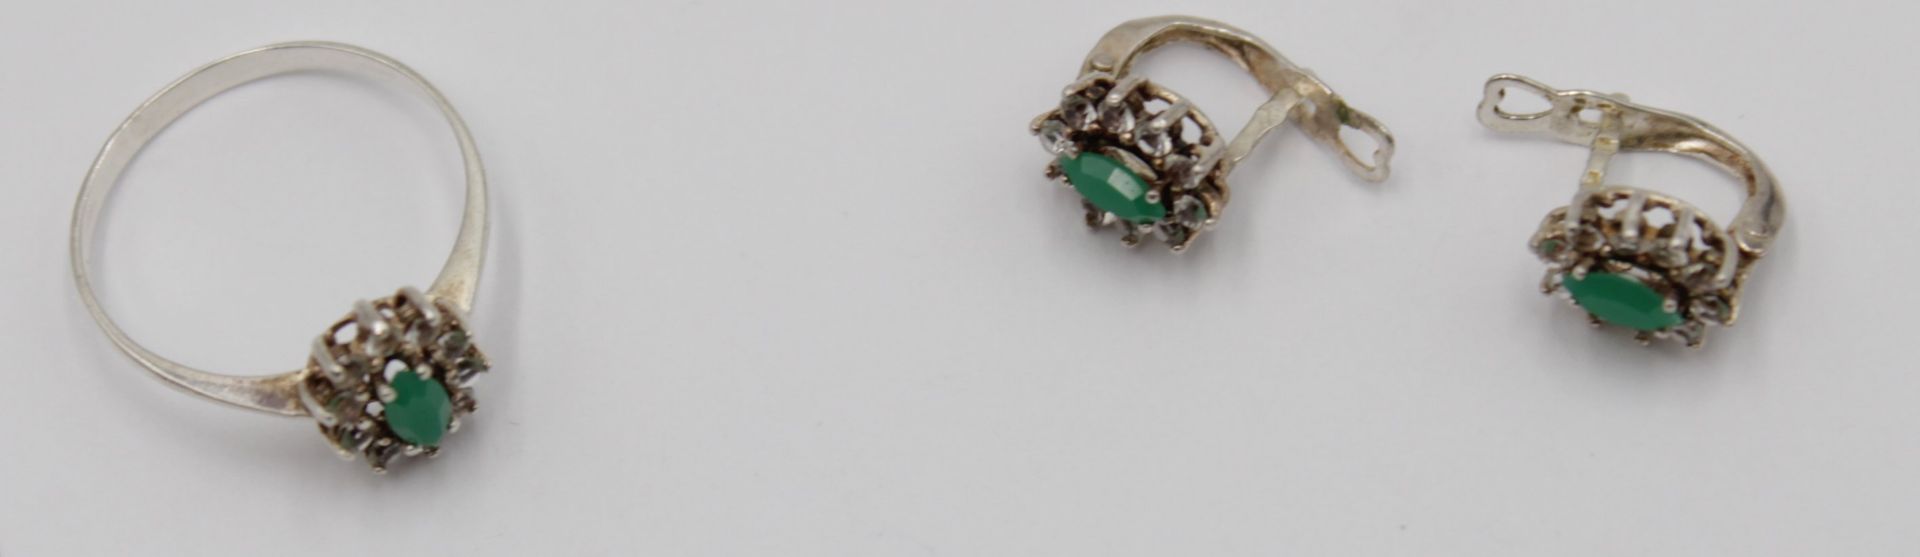 Silber-Schmuckset, Collierkette, Ring und Paar Ohrhänger, besetzt mit grünen u. klaren Steinen, zus - Bild 2 aus 4